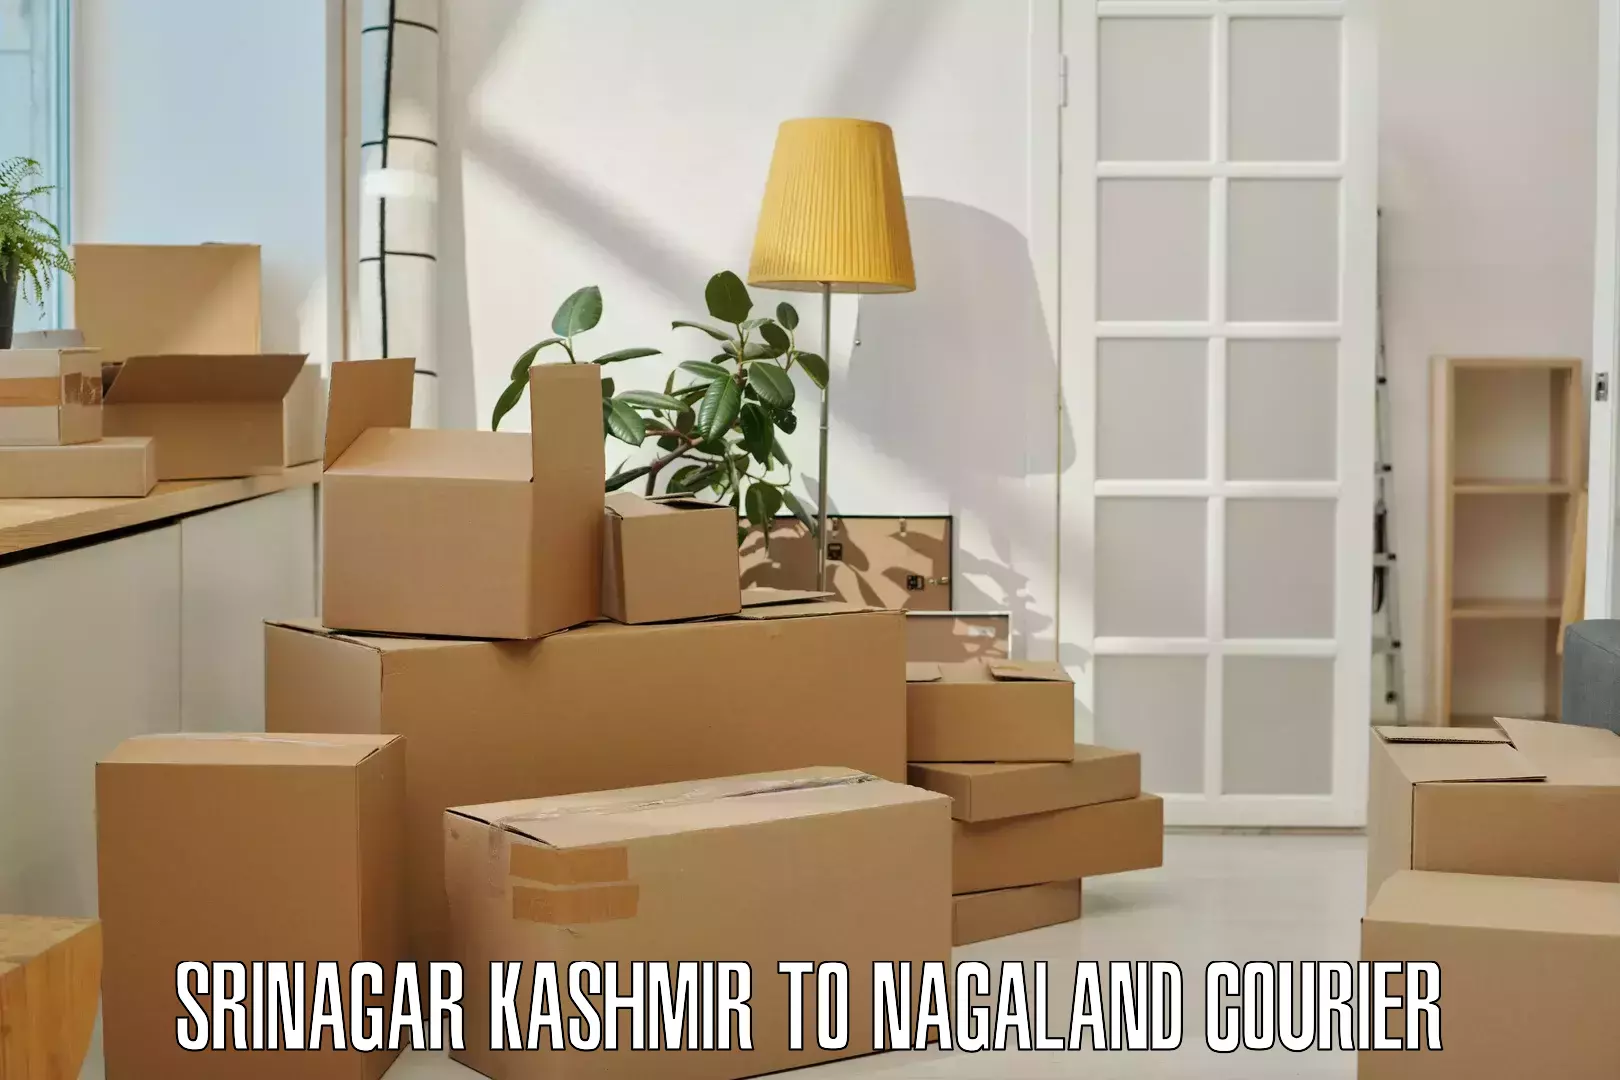 On-call courier service Srinagar Kashmir to Chumukedima